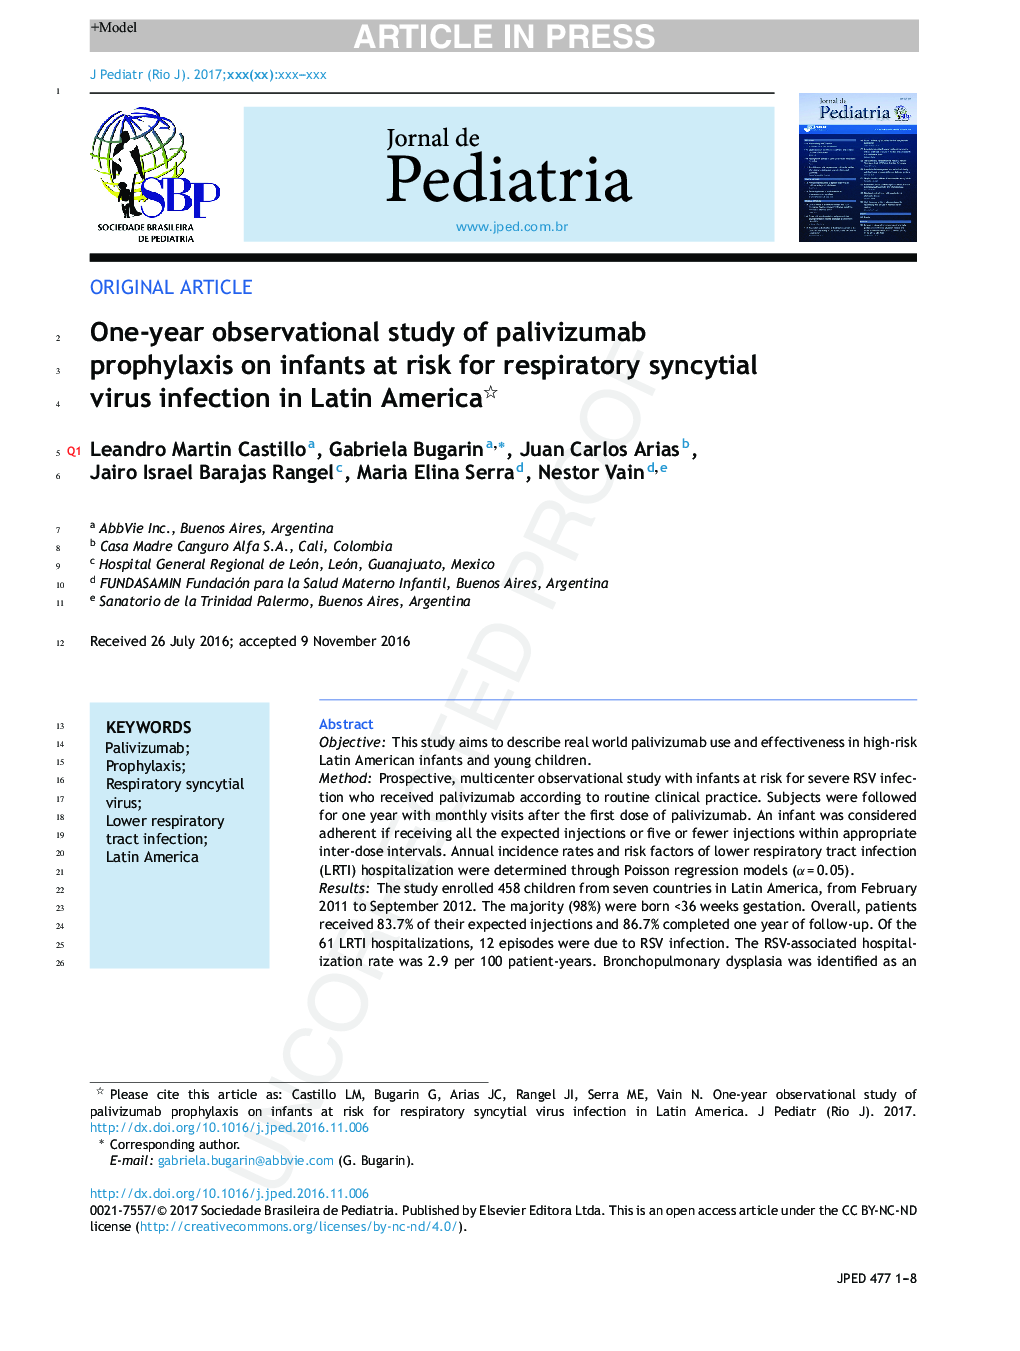 یک مطالعه سالانه مشاهده پروفیالکسی پالوویوسومب در نوزادان مبتلا به عفونت ویروس تنفسی در آمریکای لاتین 